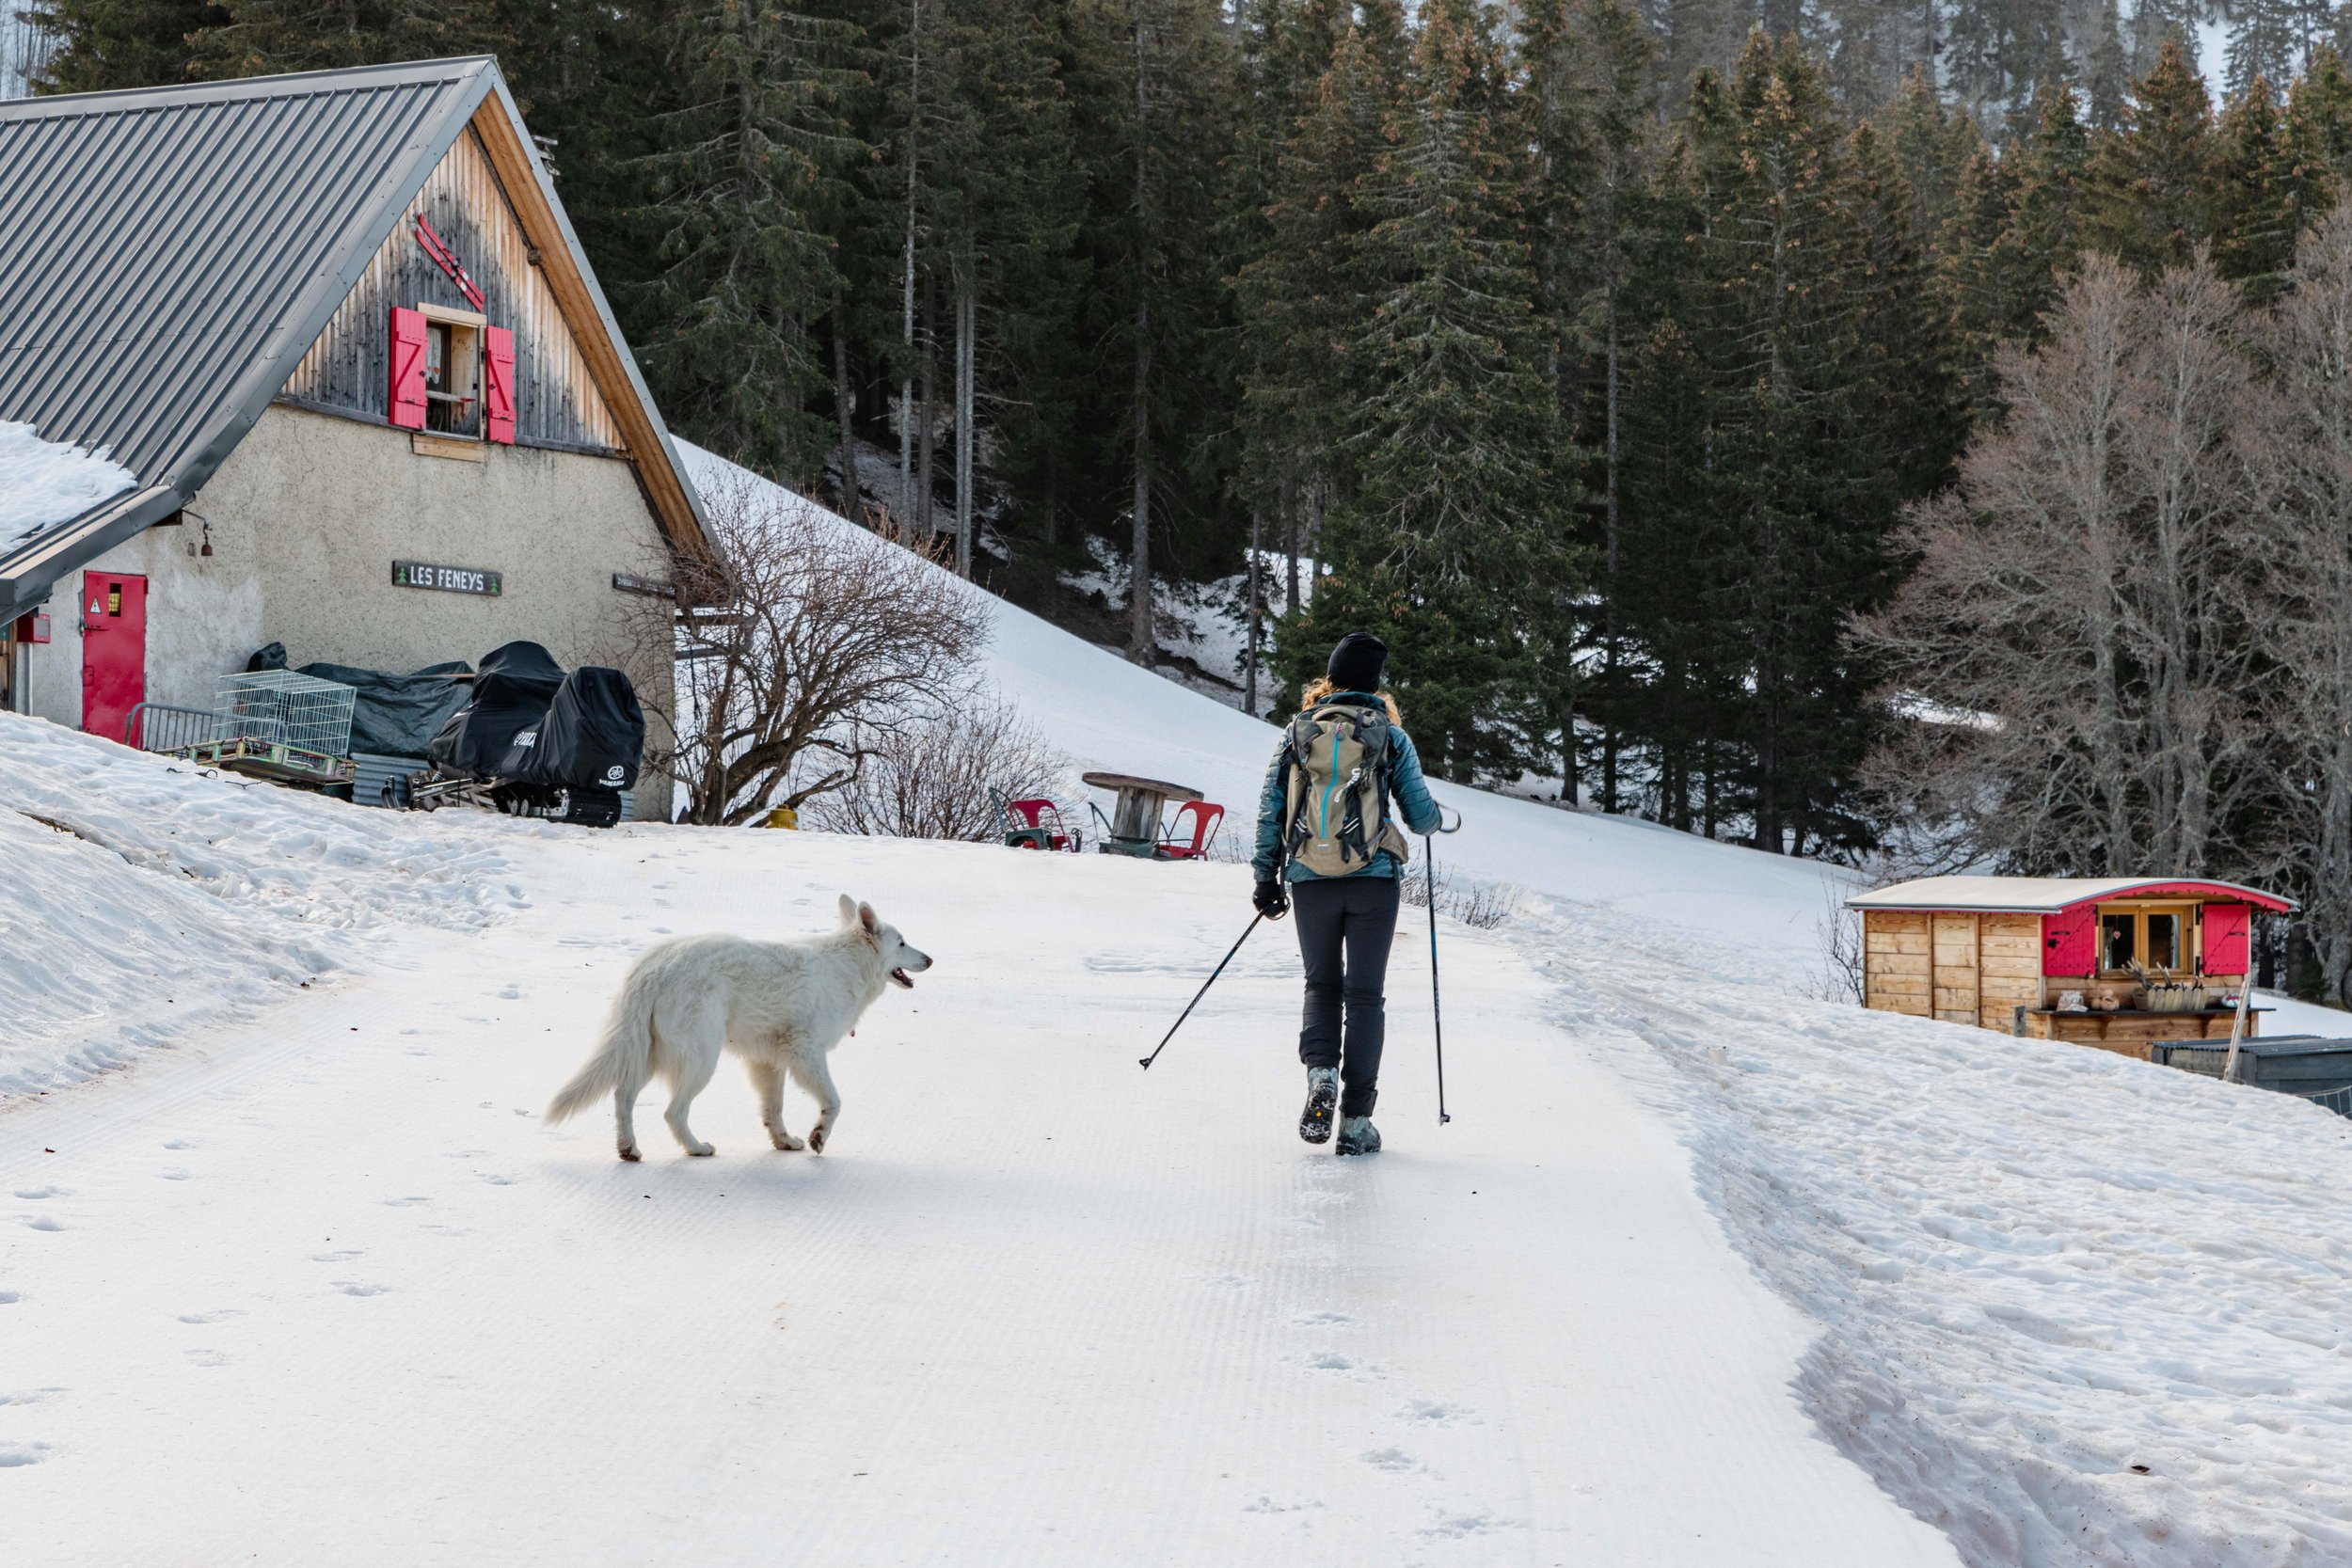  23 février 2021, Vercors, Rhone Alpes Auvergne, France : Caroline Termier et son chien rentrent de randonnée au refuge des Feneys. Elle est la gardinne de ce refuge qu'elle ouvre été et hiver. 